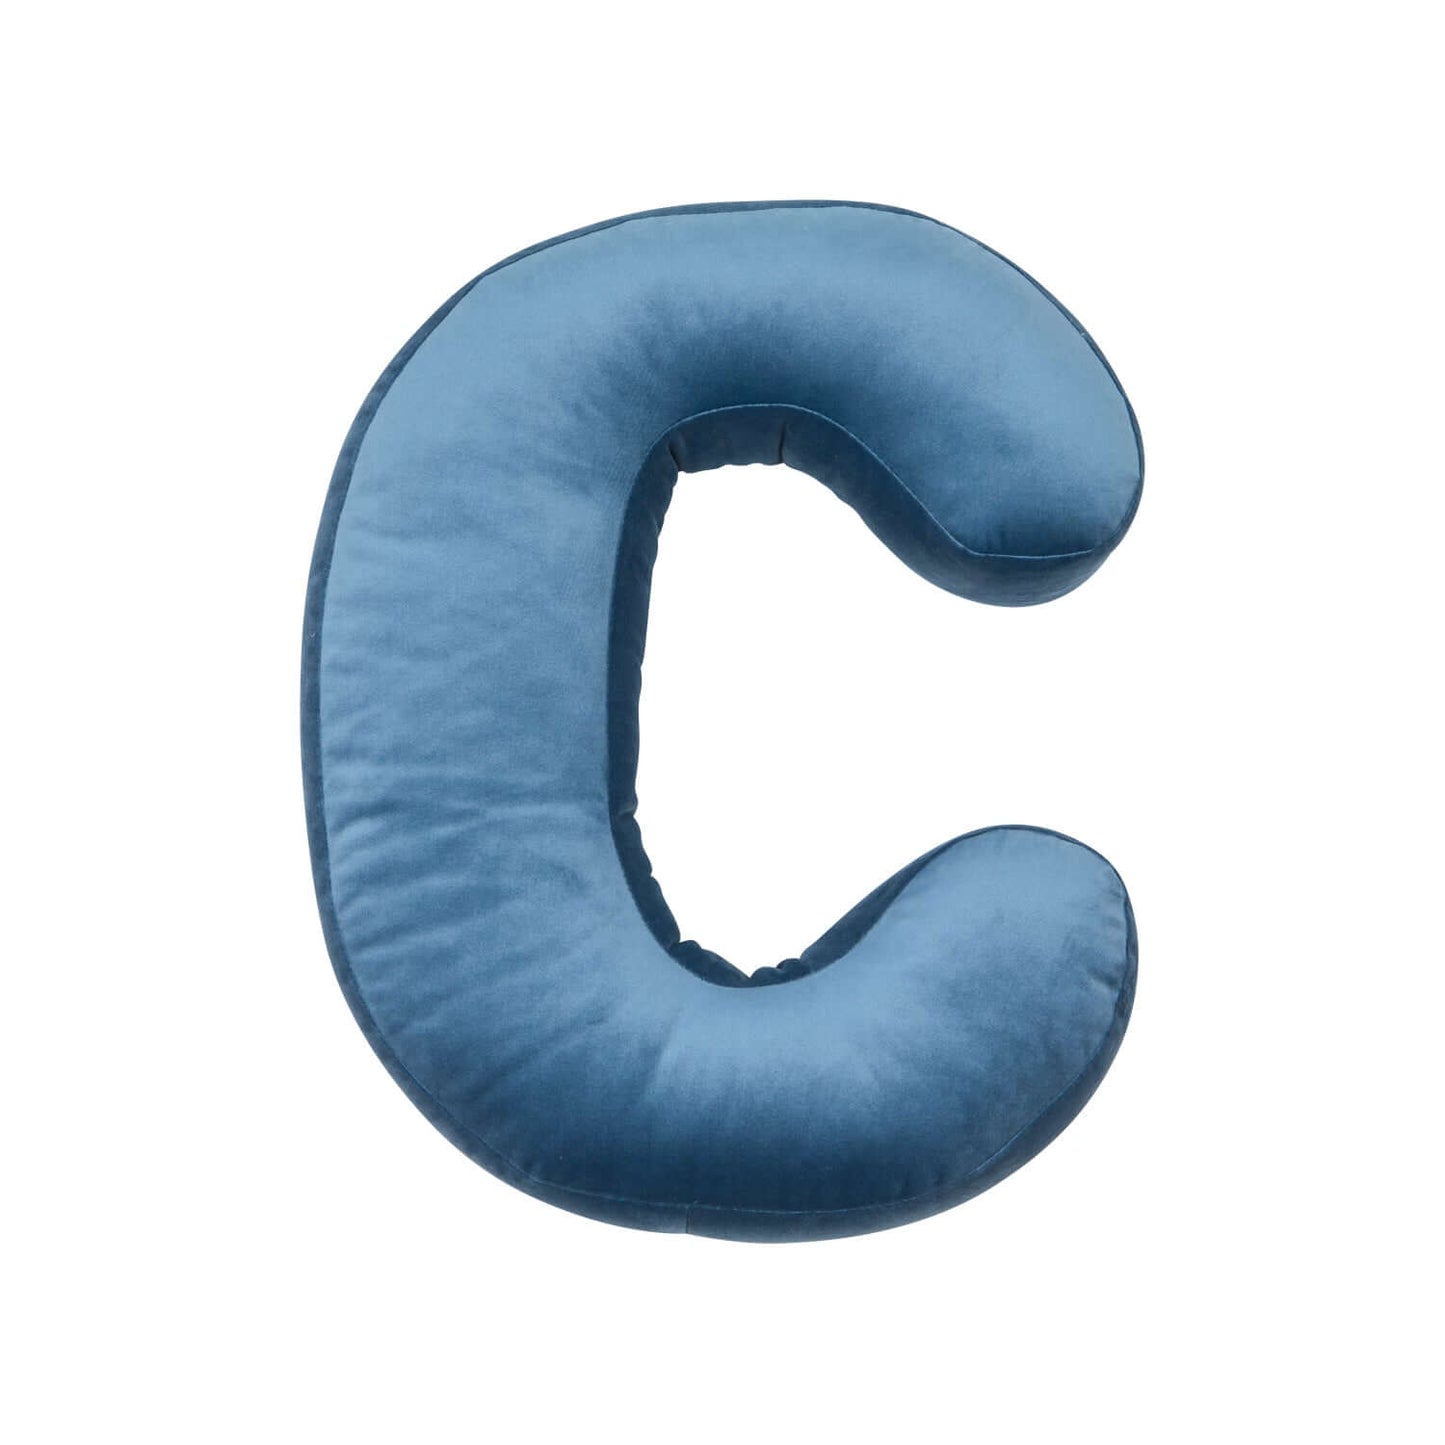 velvet letter cushion C in blue by bettys home letter pillow